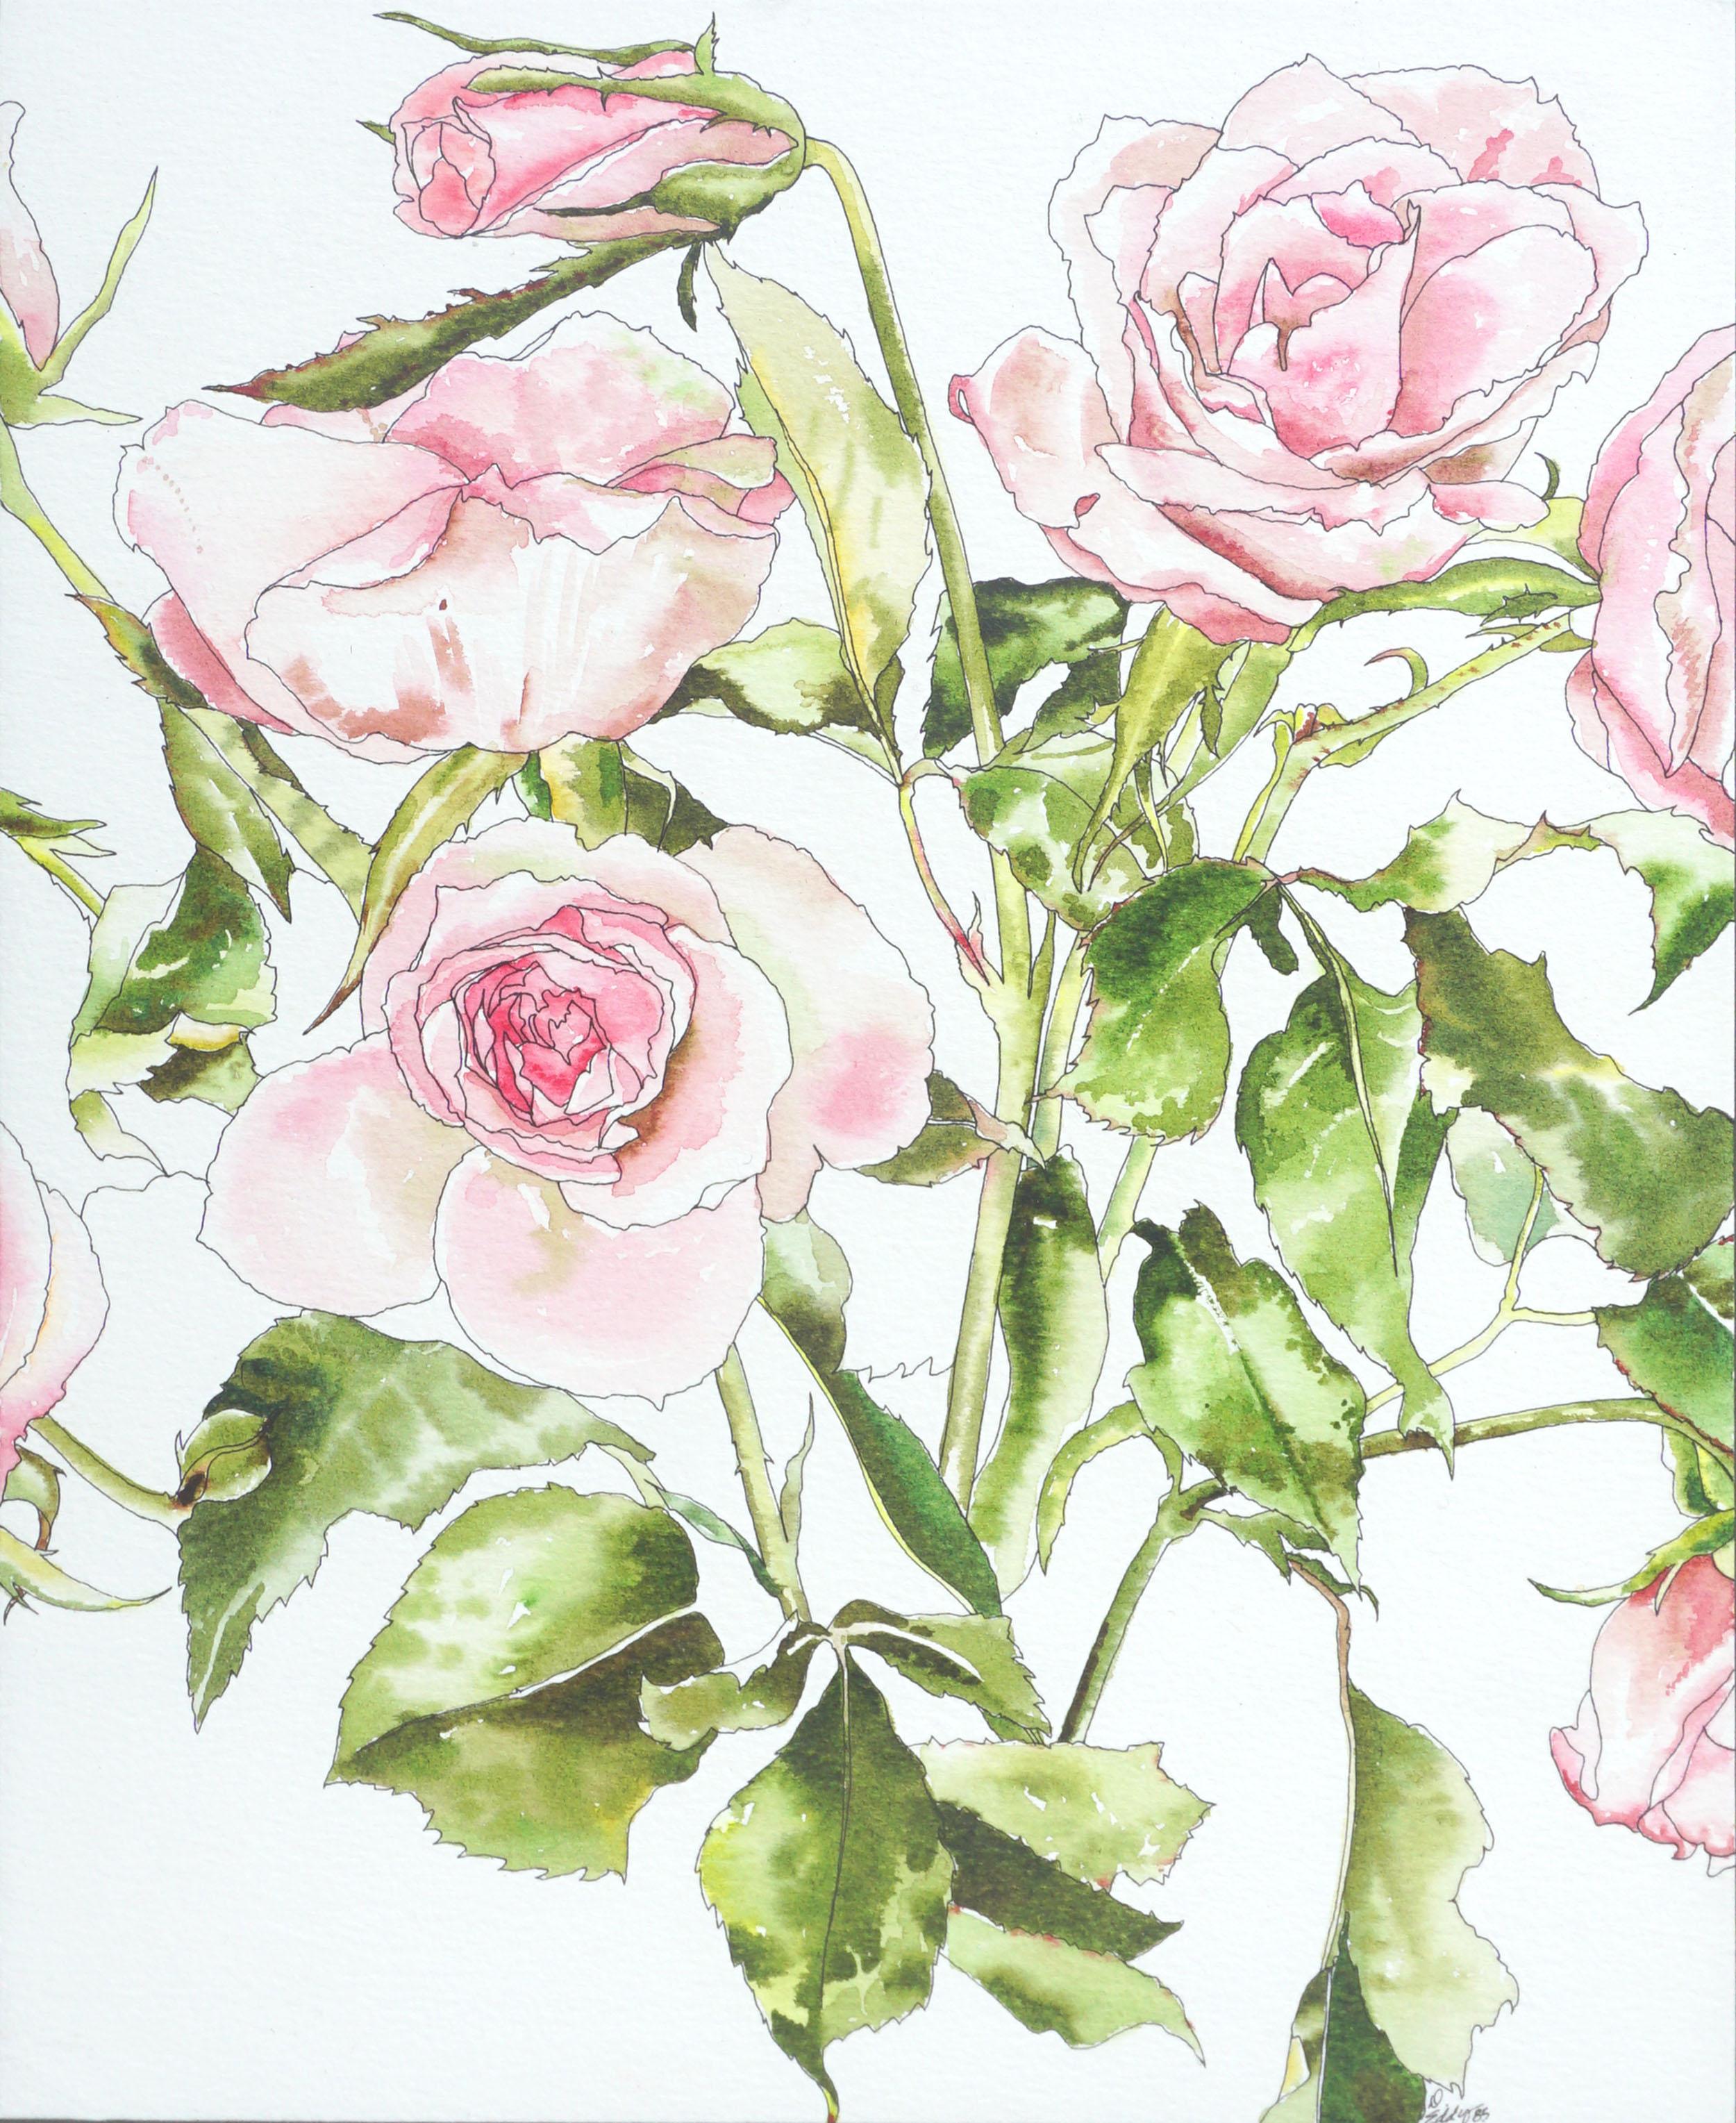 Hellrosa Rosen – botanische Studie  – Art von Deborah Eddy